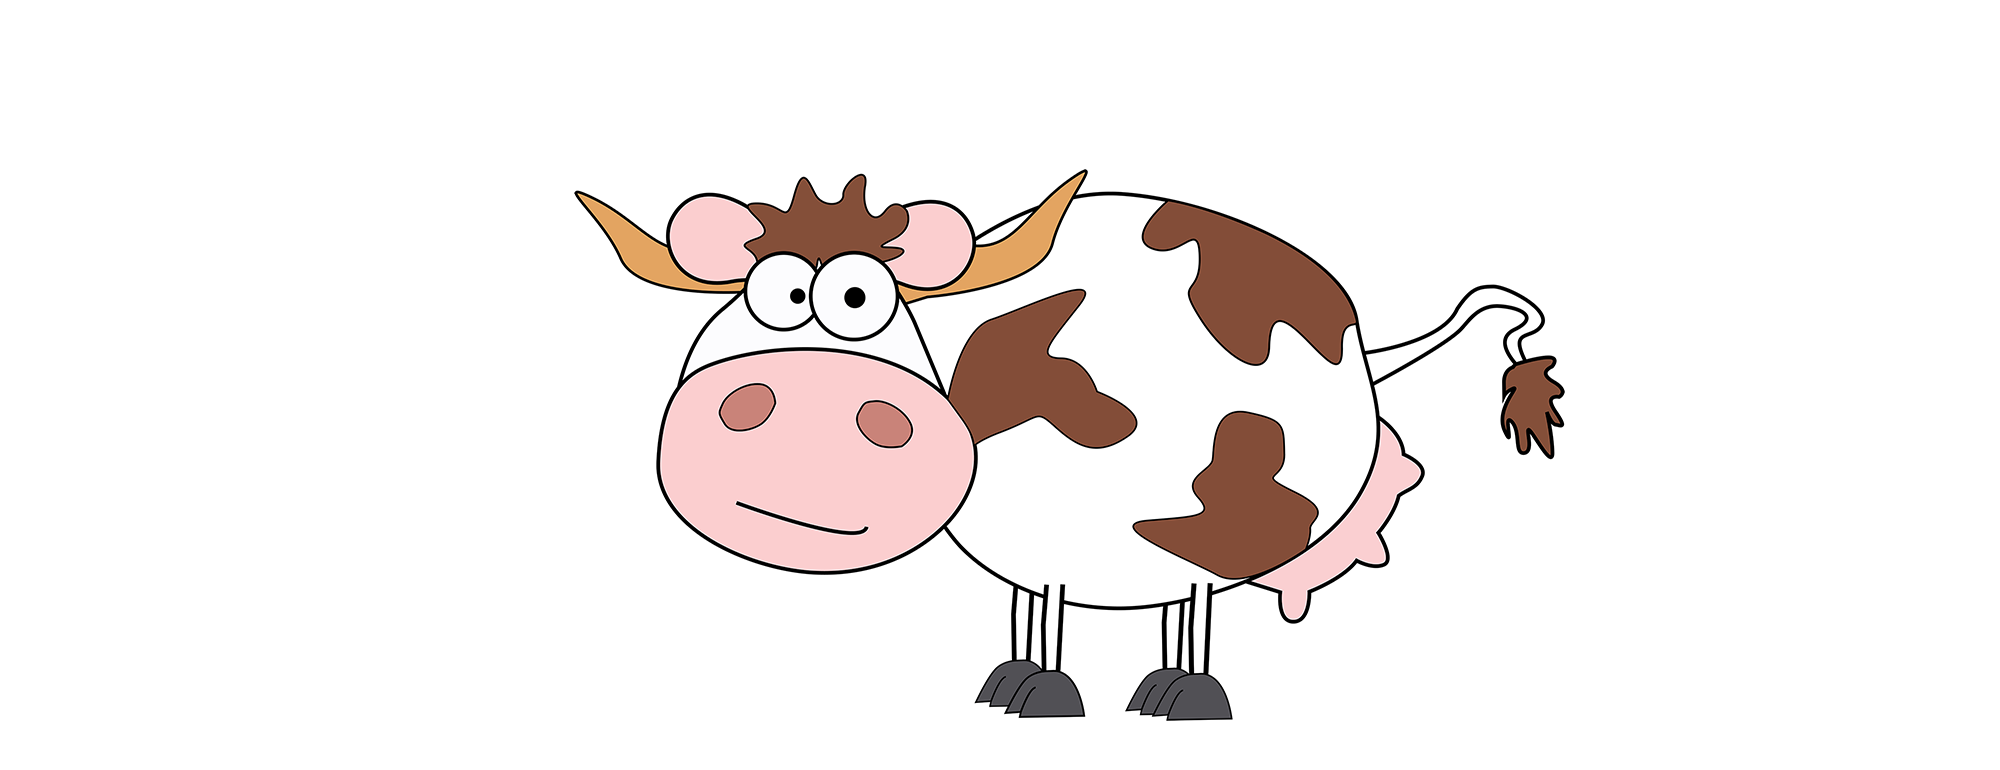 Hat Eine Kuh Von Herr Meier Bedarf Gemelkt Zu Werden, Kann Sie Sich Selbstständig Zum Melkroboter Bewegen. - Kuh Melken, Transparent background PNG HD thumbnail